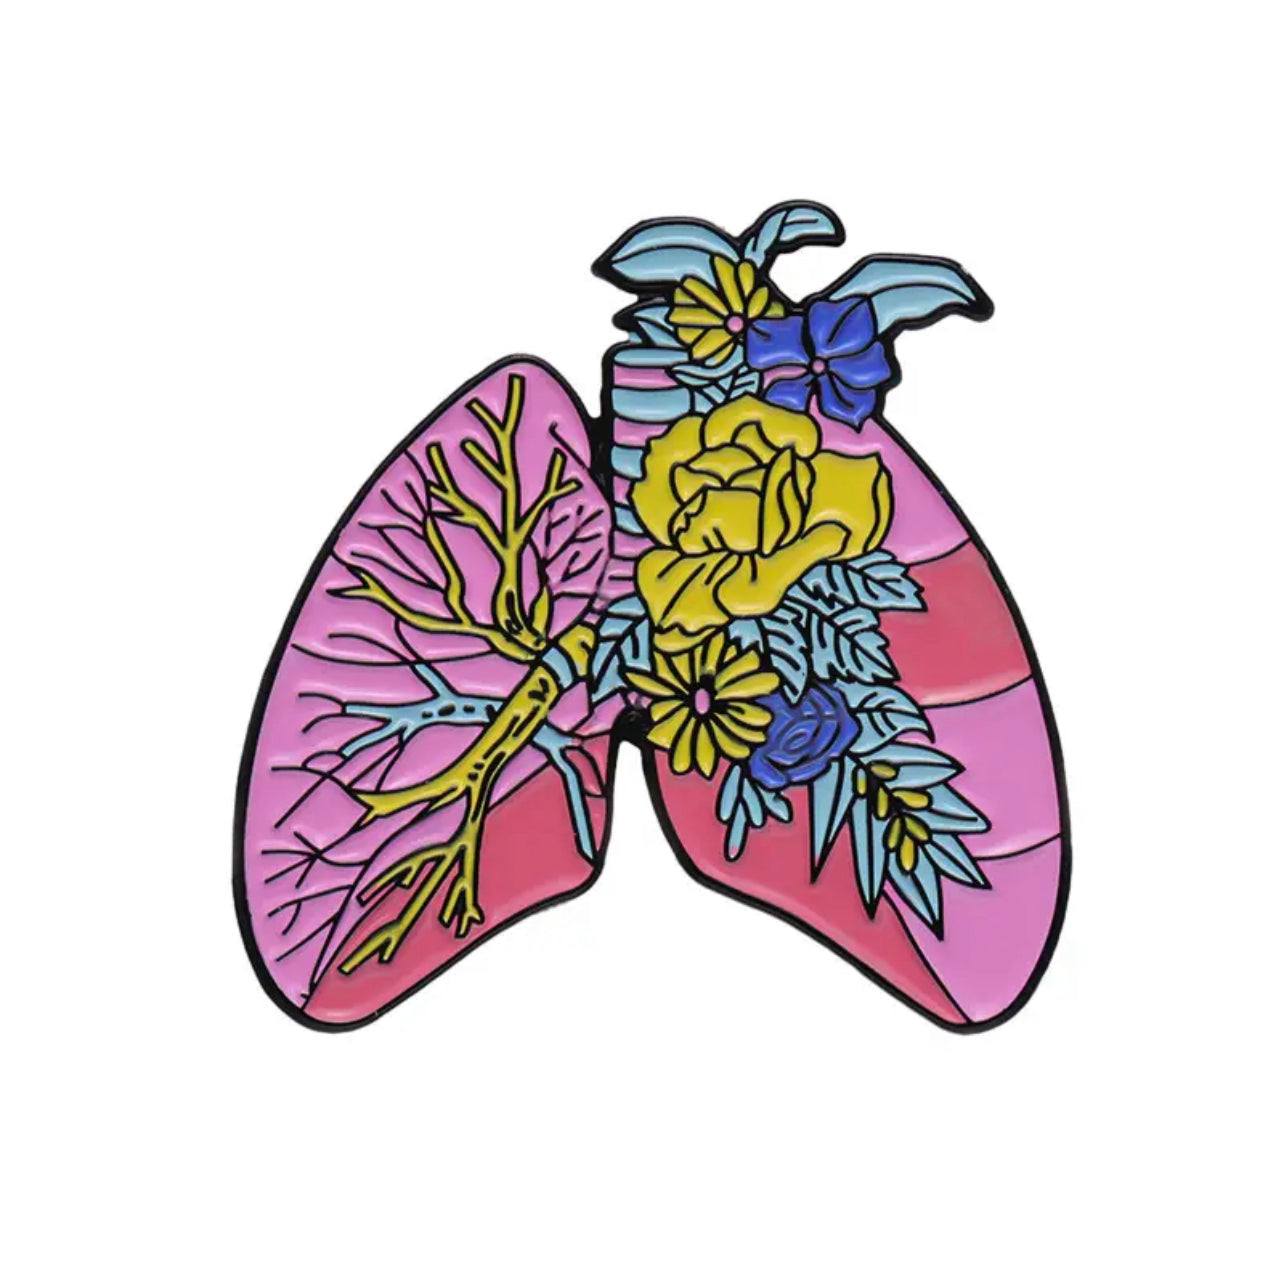 Flowering lungs